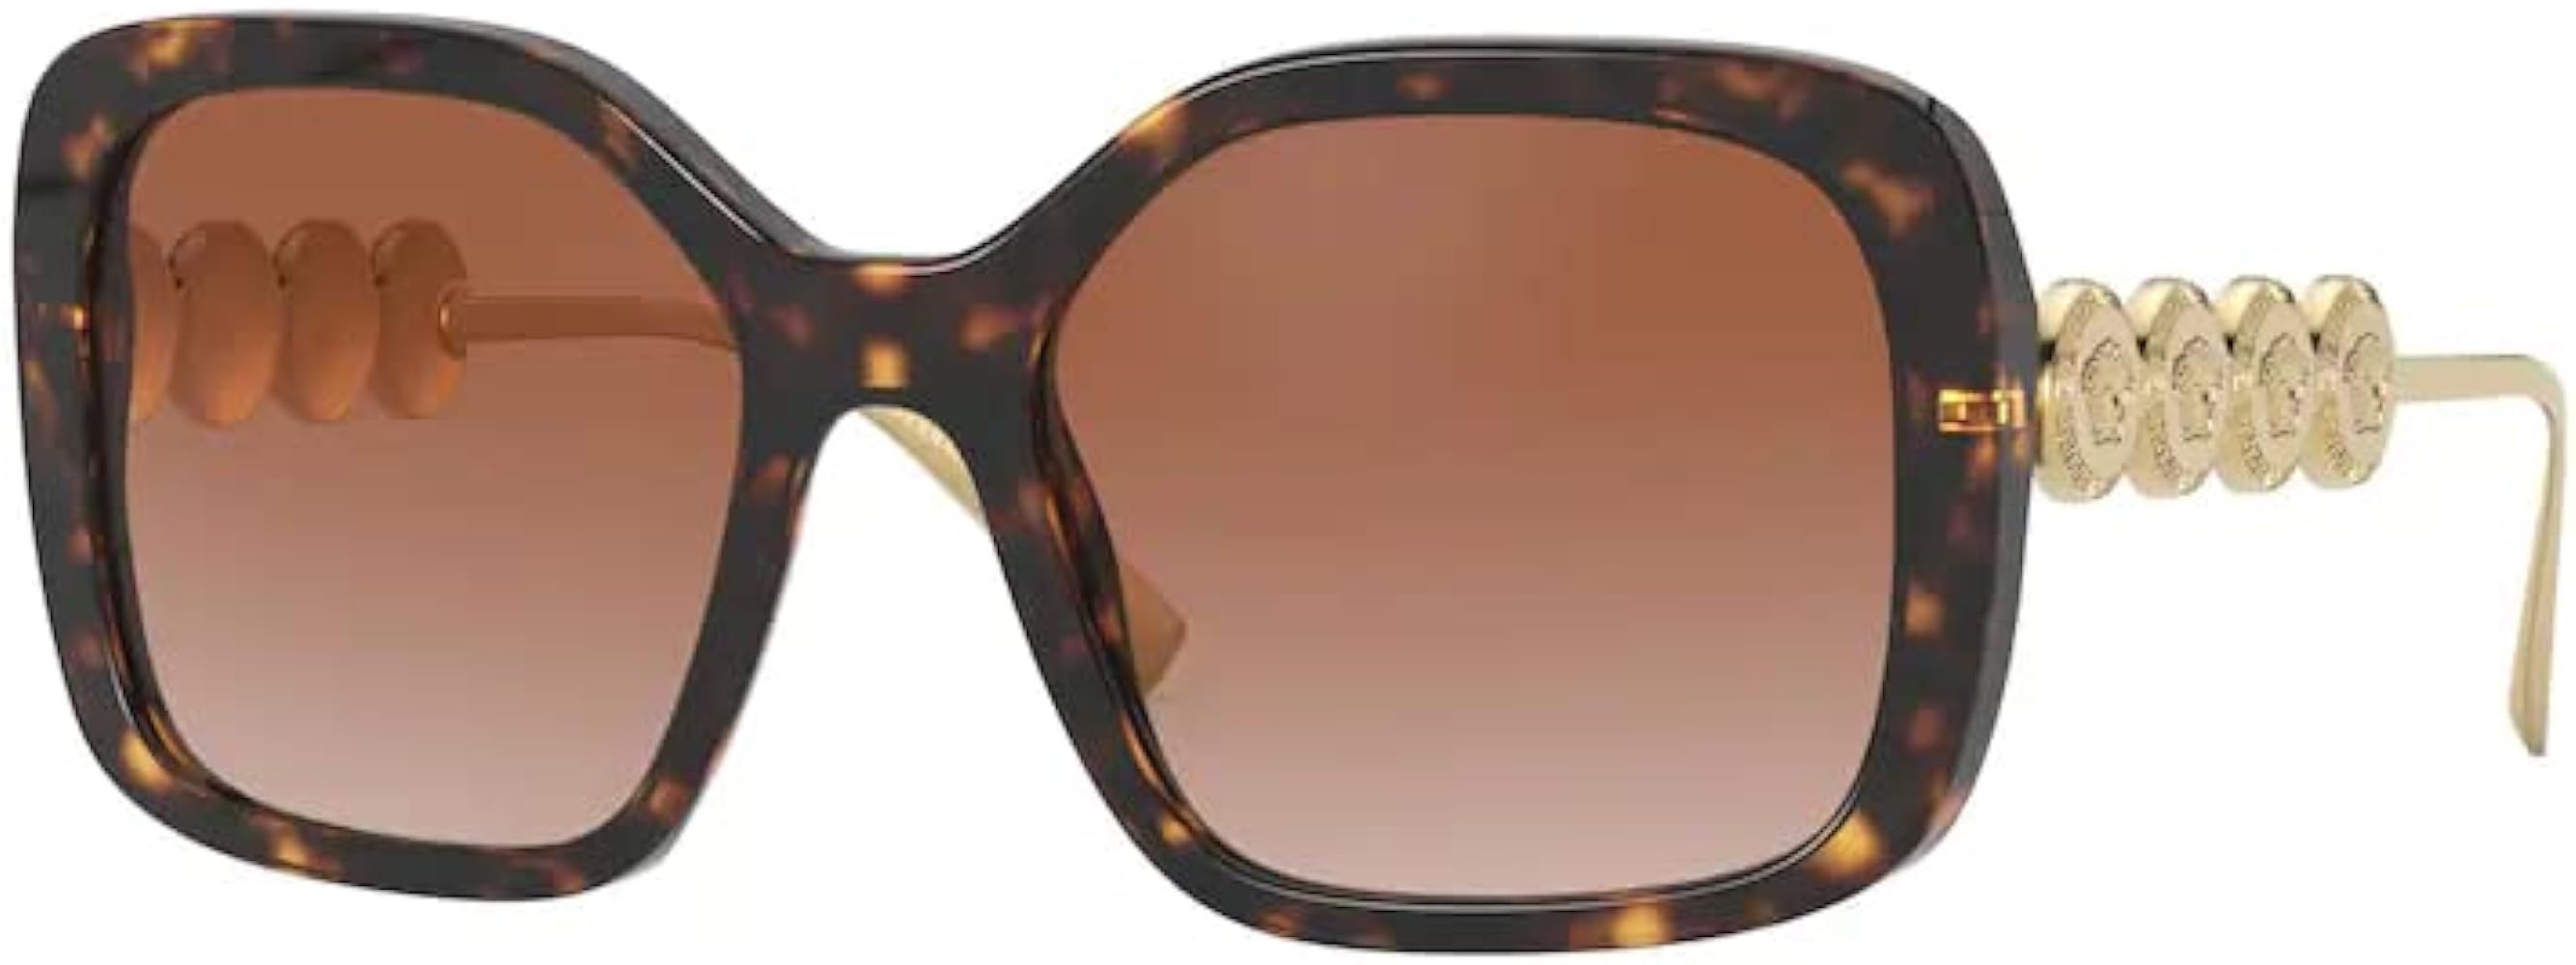 VE4375 108/13 53MM Havana / Brown Gradient Dark Brown Irregular Sunglasses for Women + BUNDLE With D | Amazon (US)